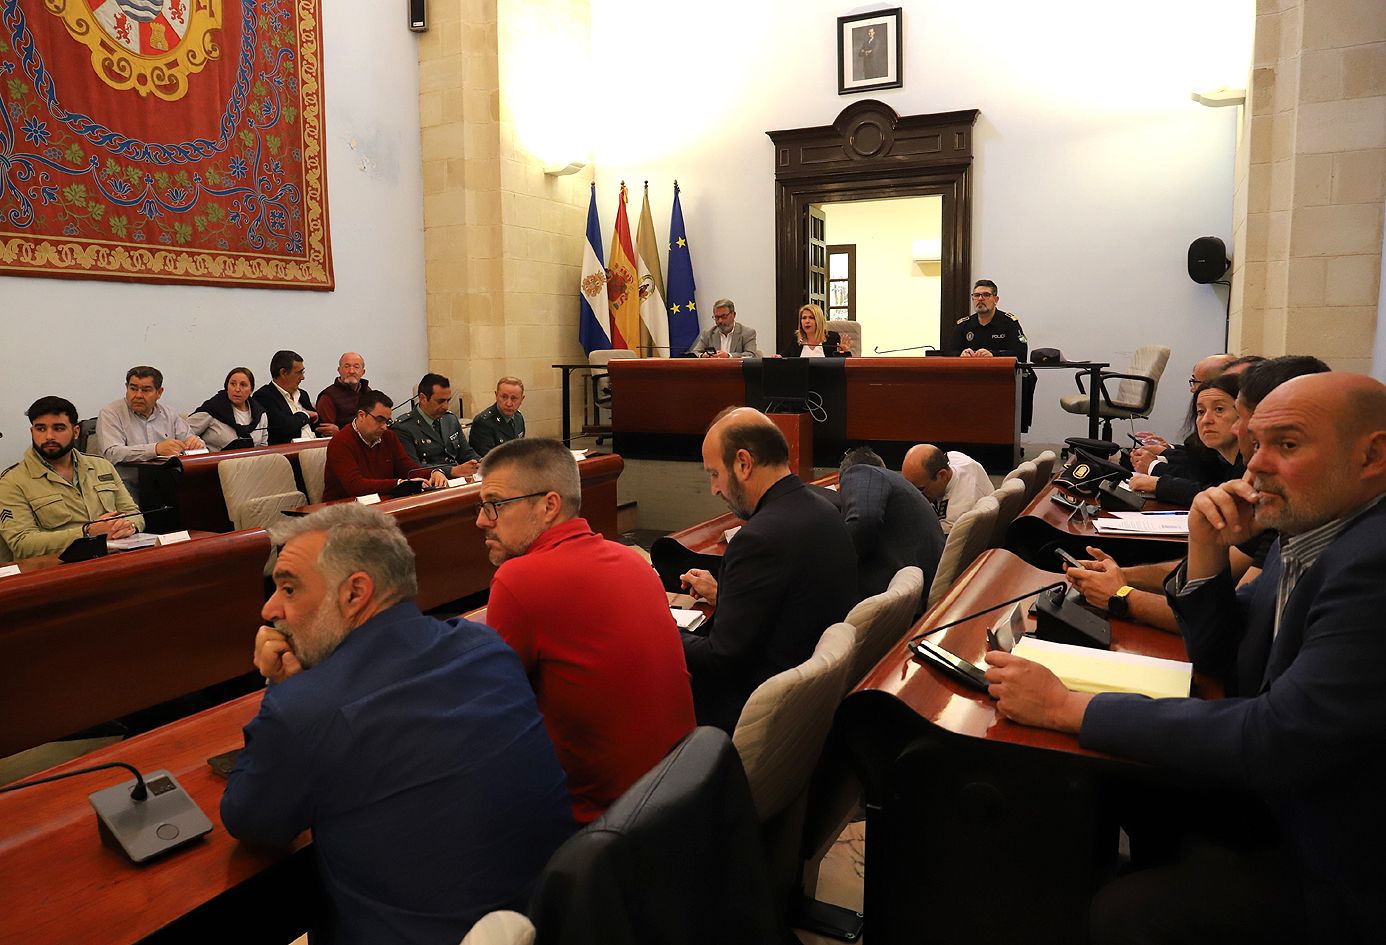 La Junta Local Seguridad reunida en el salón de plenos del Ayuntamiento.